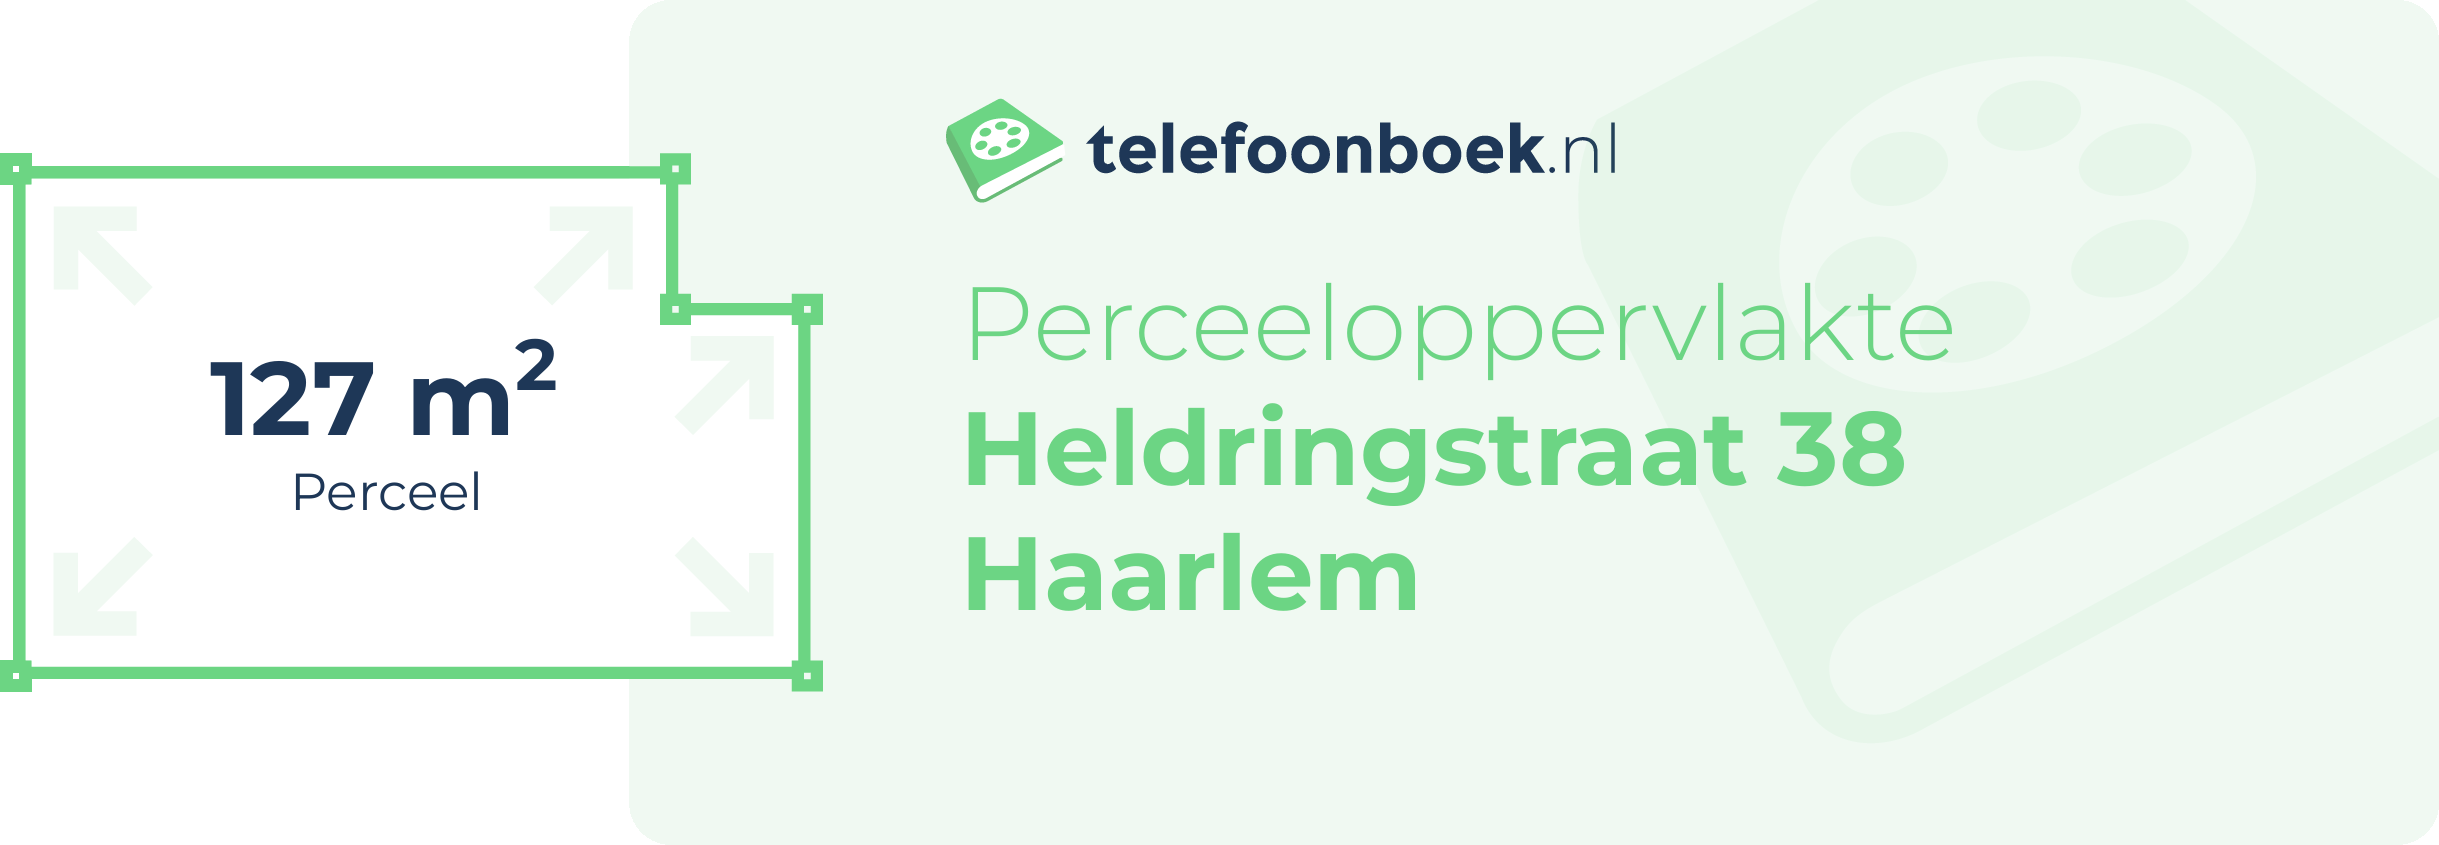 Perceeloppervlakte Heldringstraat 38 Haarlem